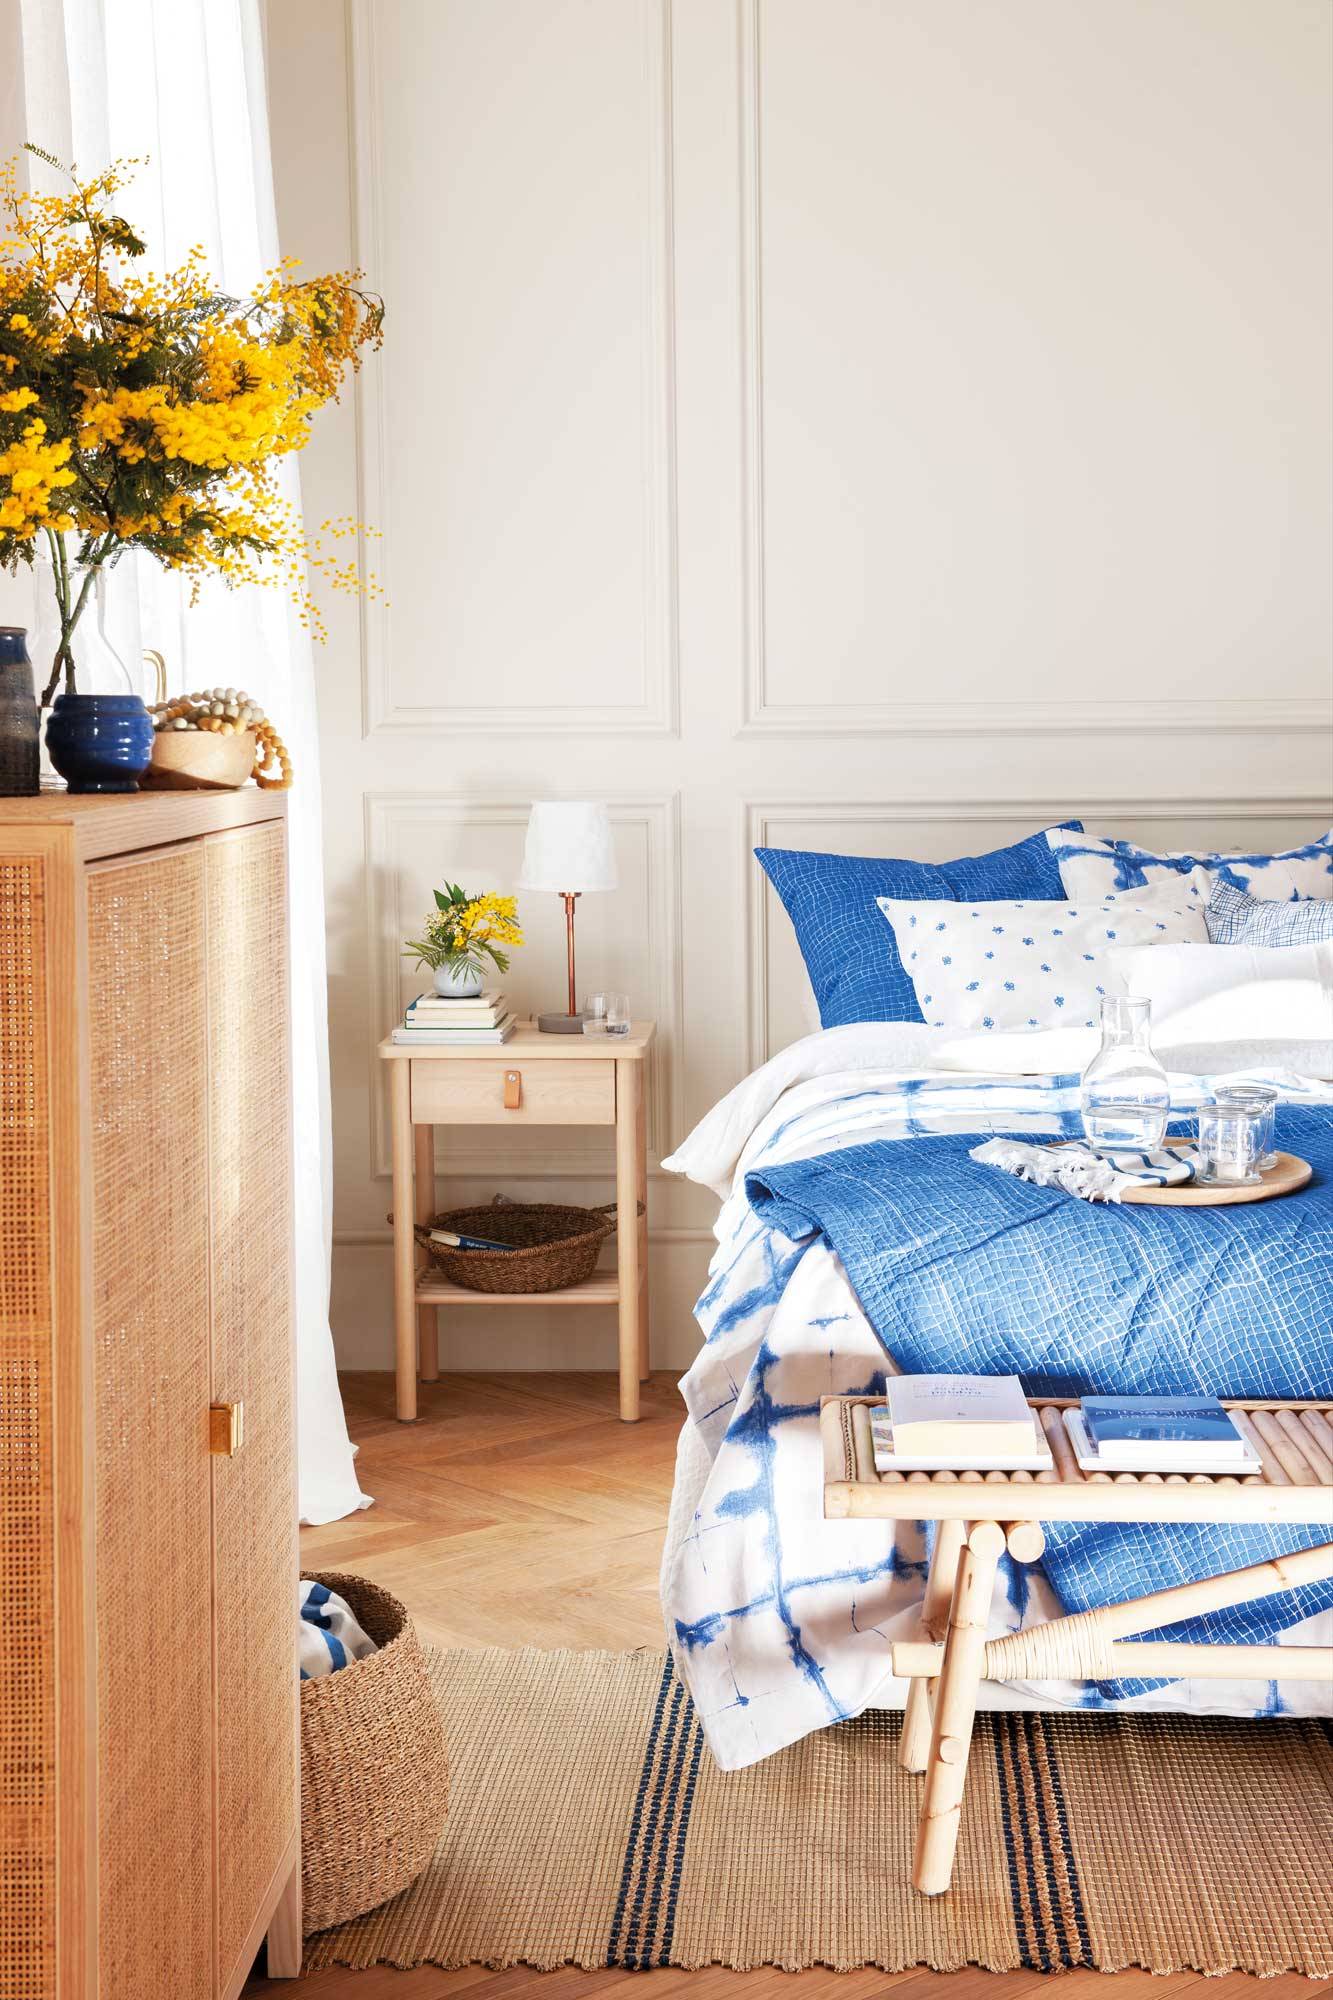 Dormitorio con mesita de noche de madera y ropa de cama en tonos azules.